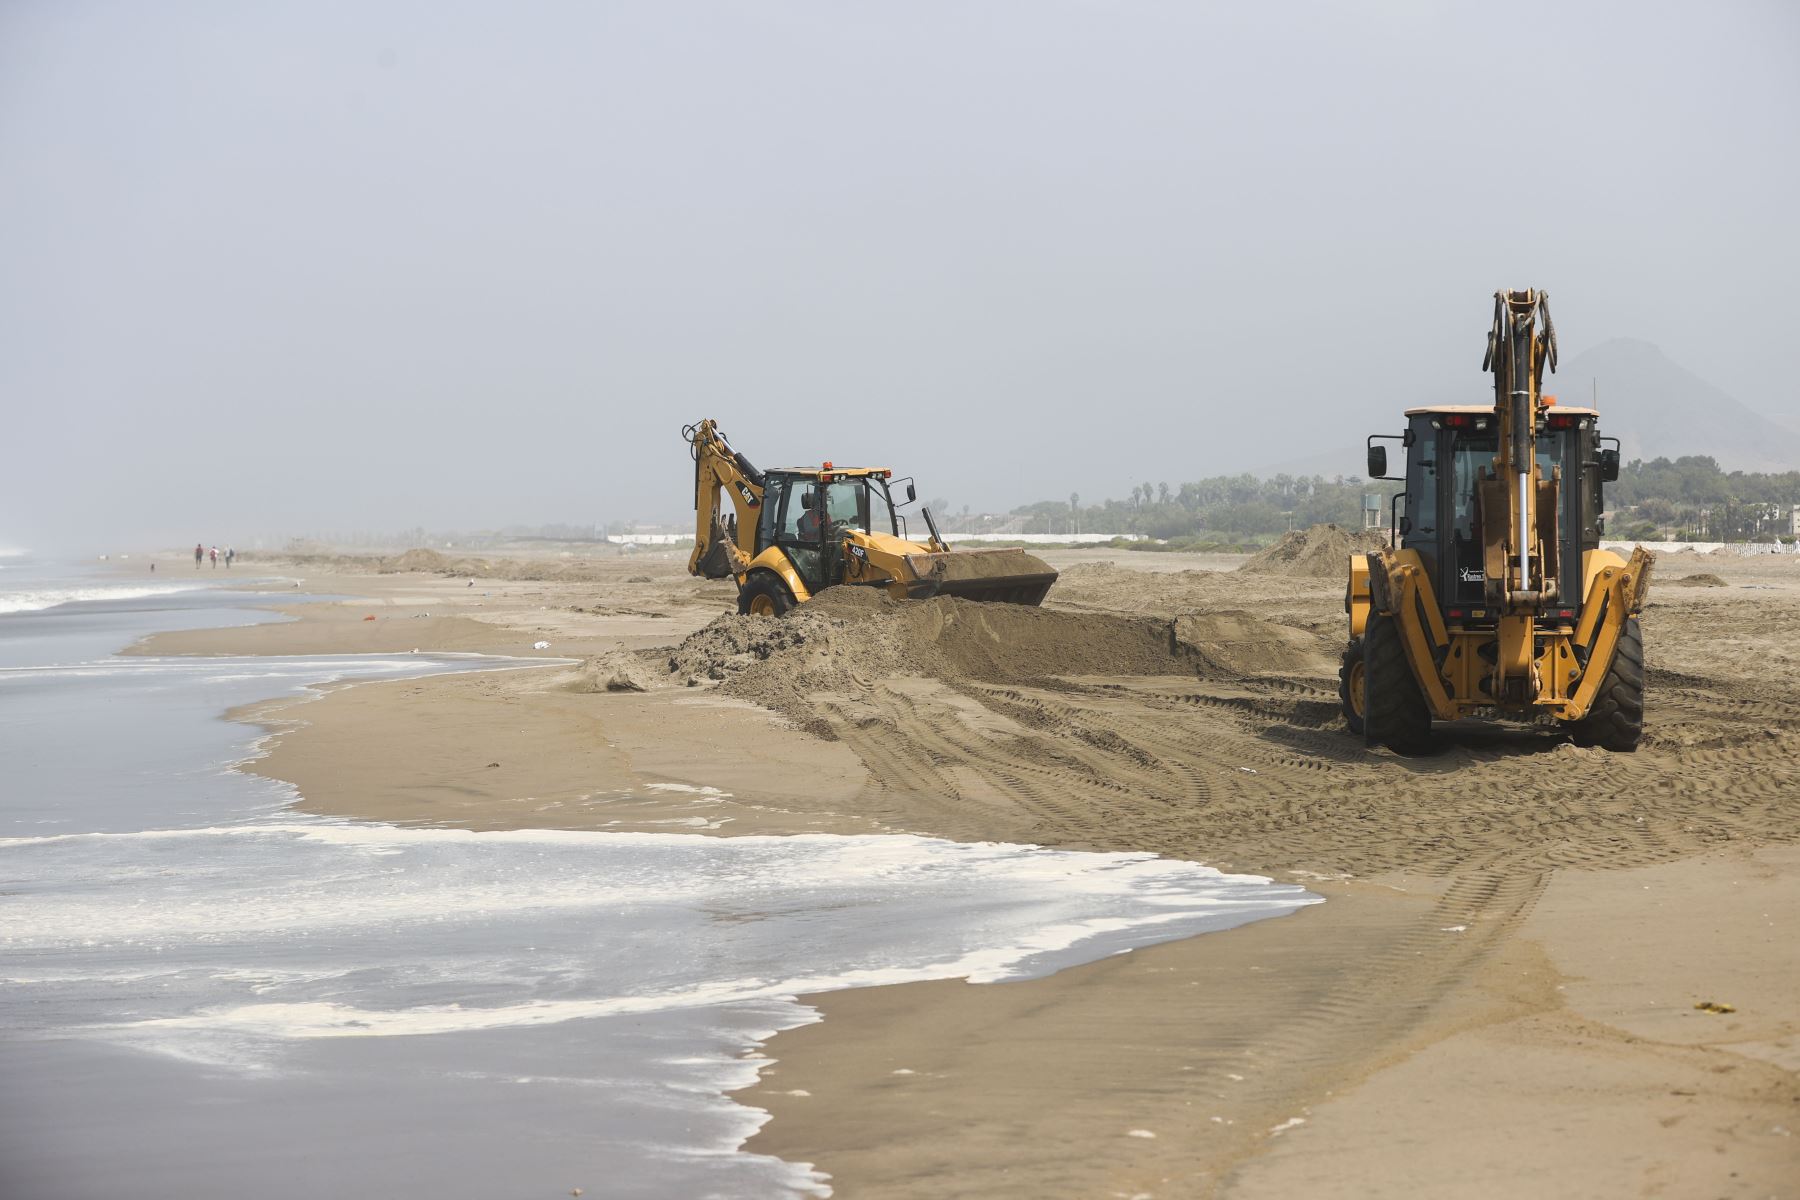 Continúan con las labores de limpieza con maquinaria para remover los restos de petróleo en la arena y la espuma que el mar viene arrojando a la orilla. Foto: ANDINA/Jhonel Rodríguez